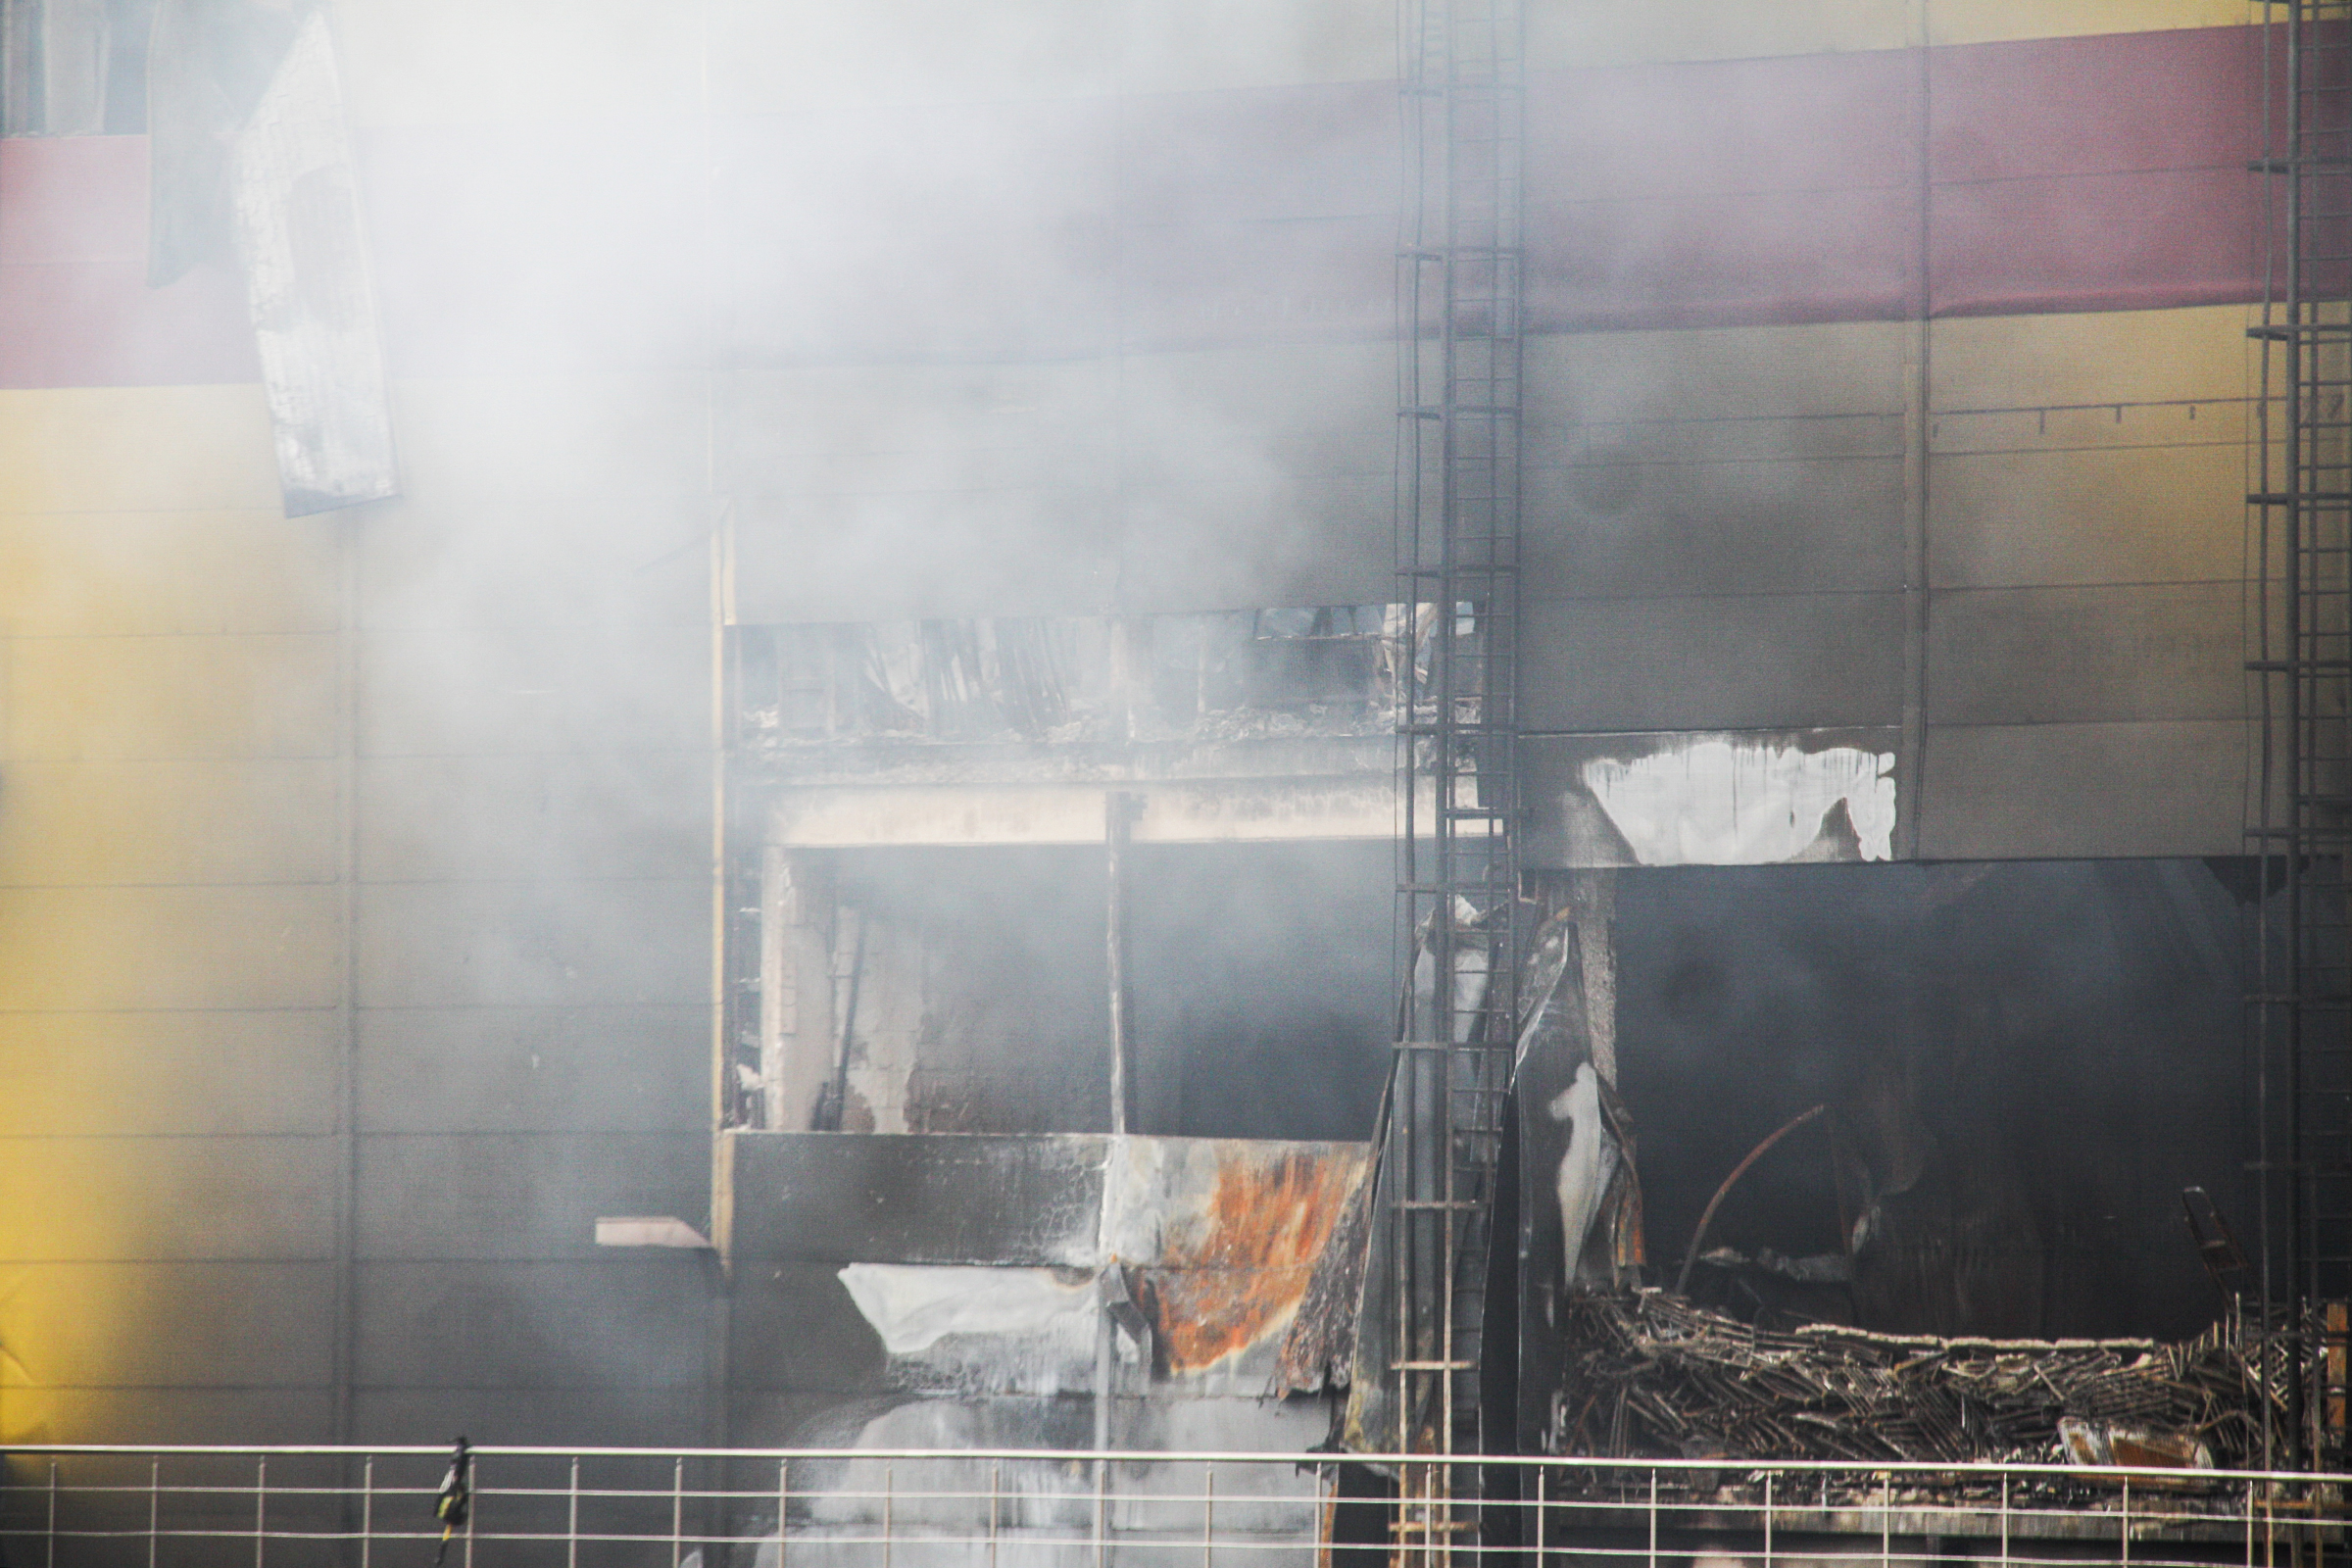 В результате пожара обрушилась часть здания. Площадь обрушения, по словам представителя МЧС, составила 300 кв. м.
&nbsp;